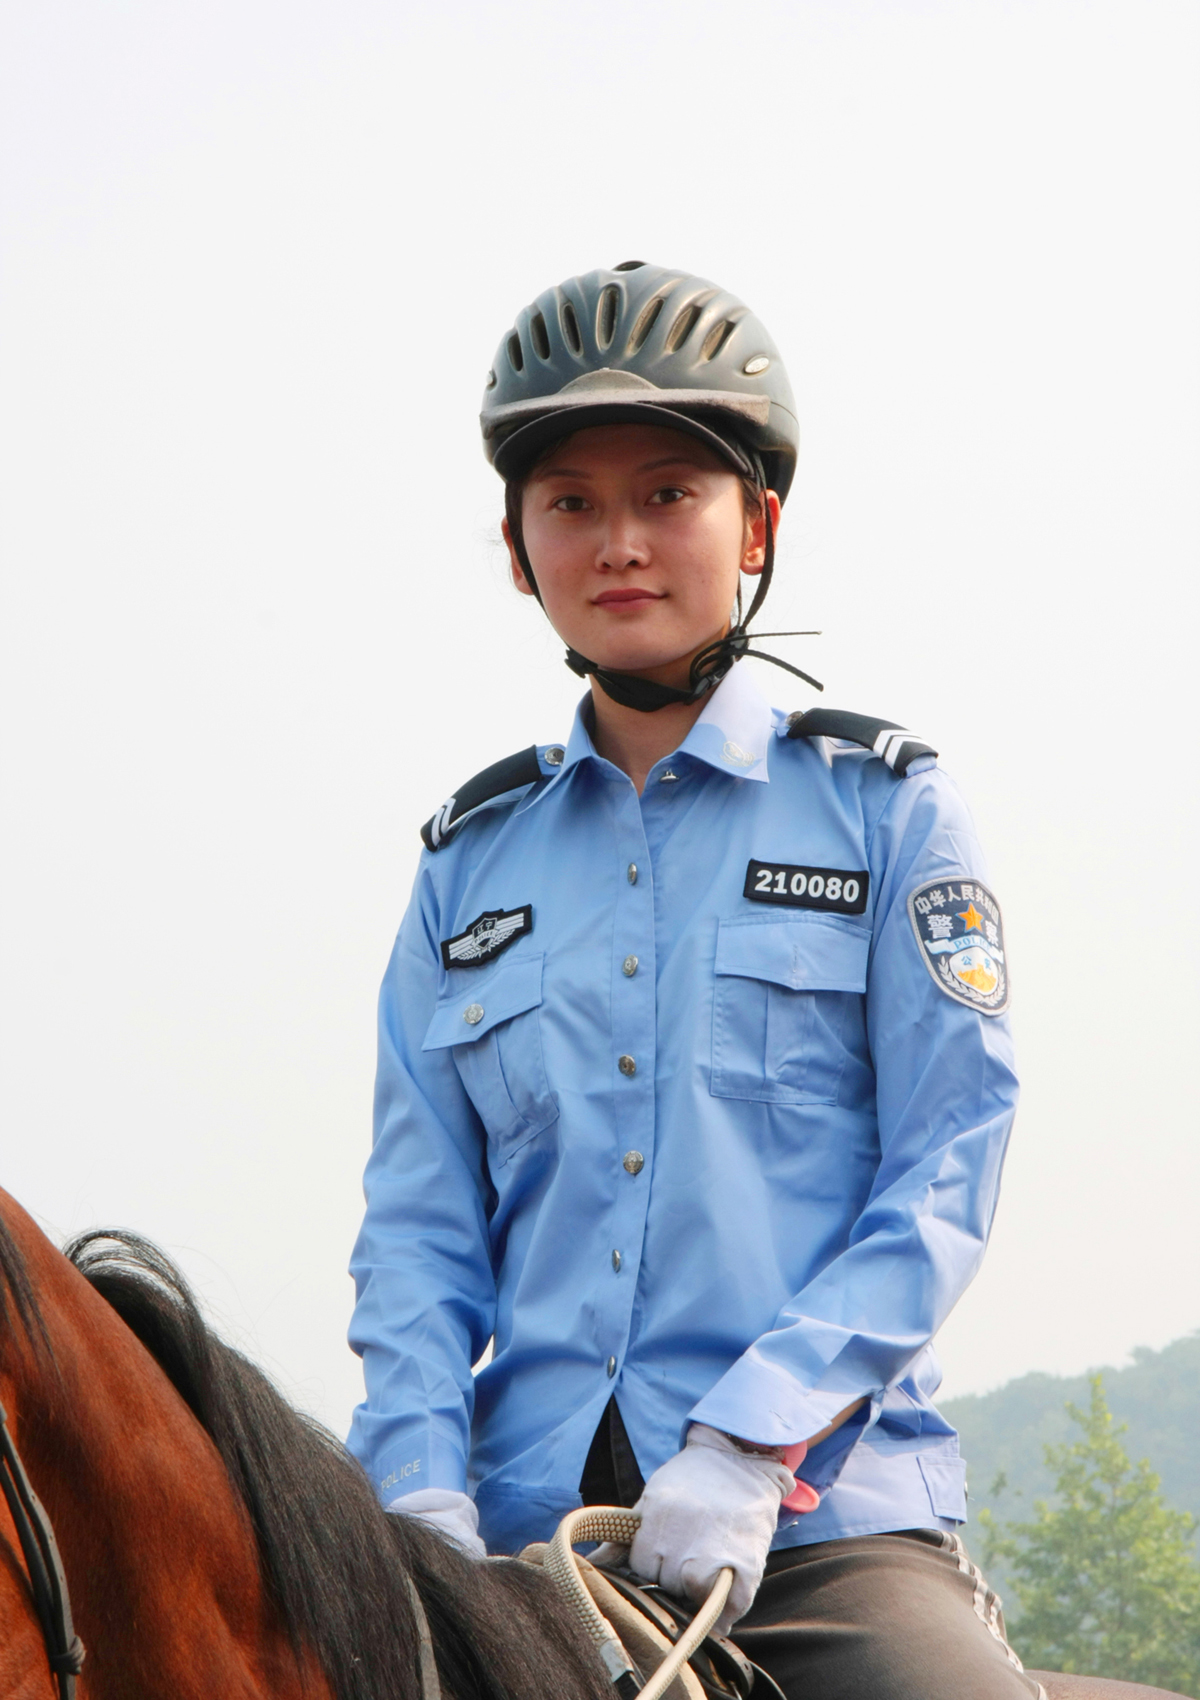 【英姿飒爽摄影图片】大连女子骑警训练基地纪实摄影